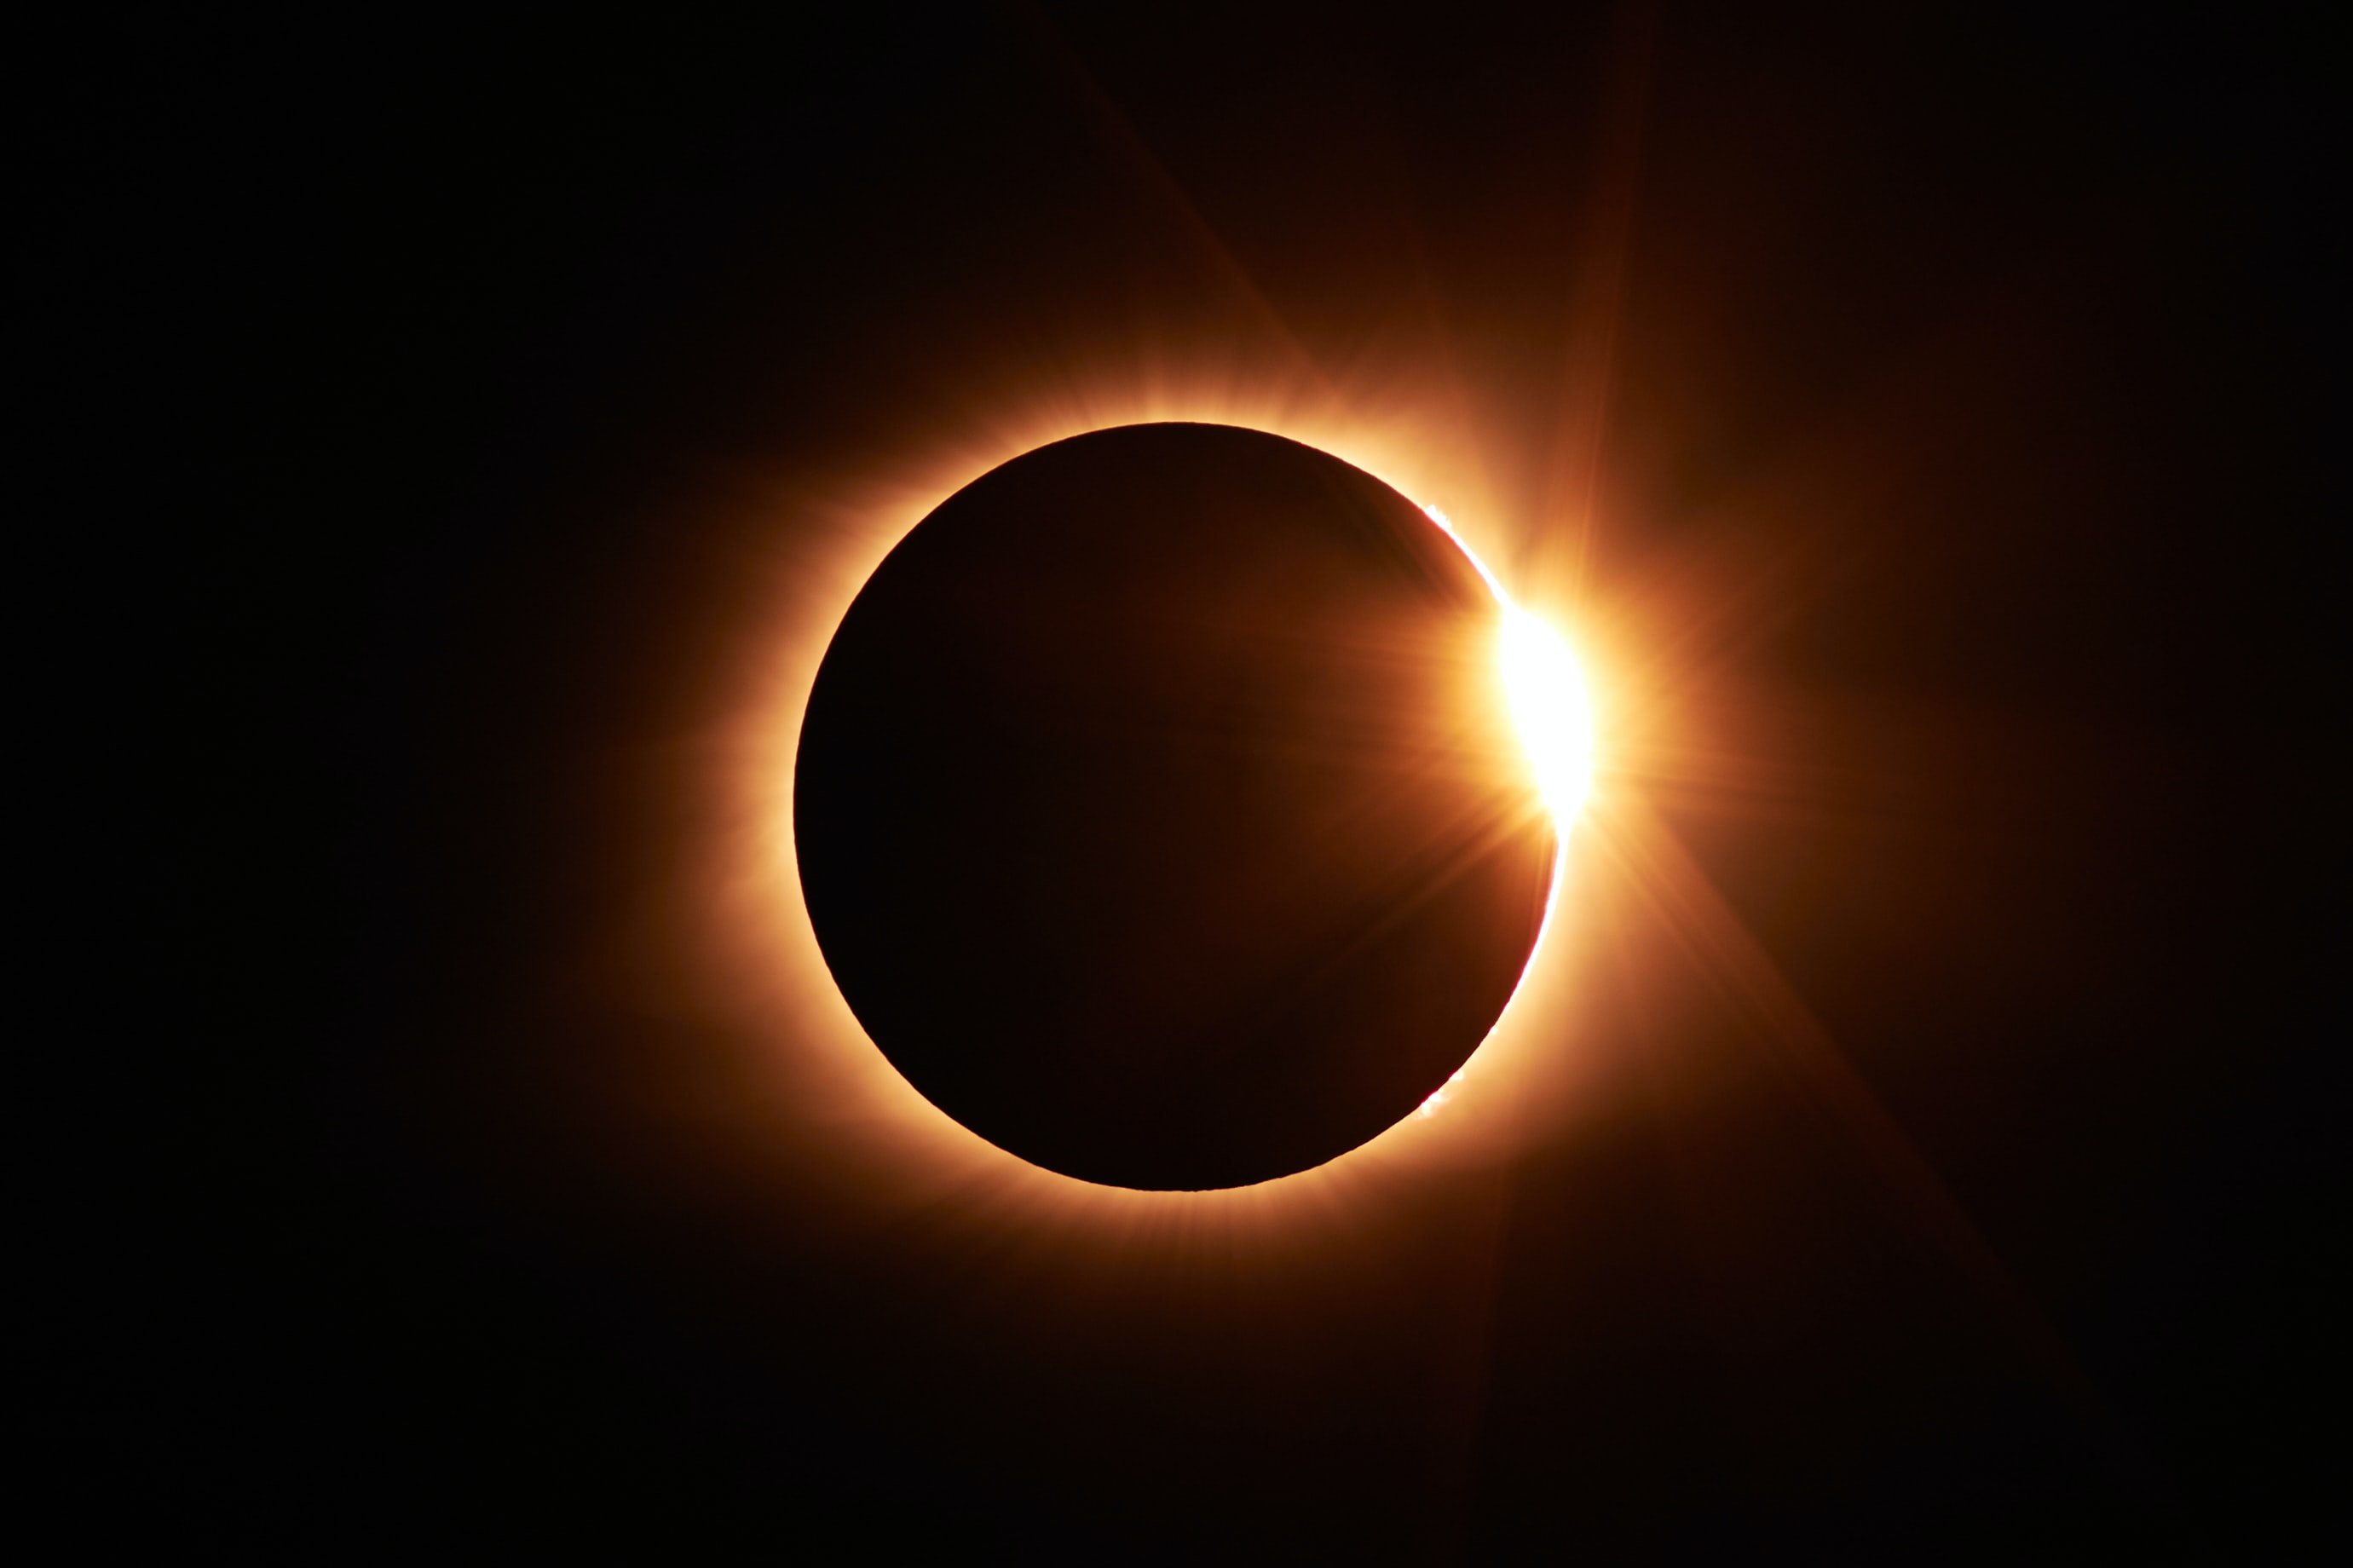 Com veure l'eclipsi solar d'avui, 25 d'octubre 2022, sense perill